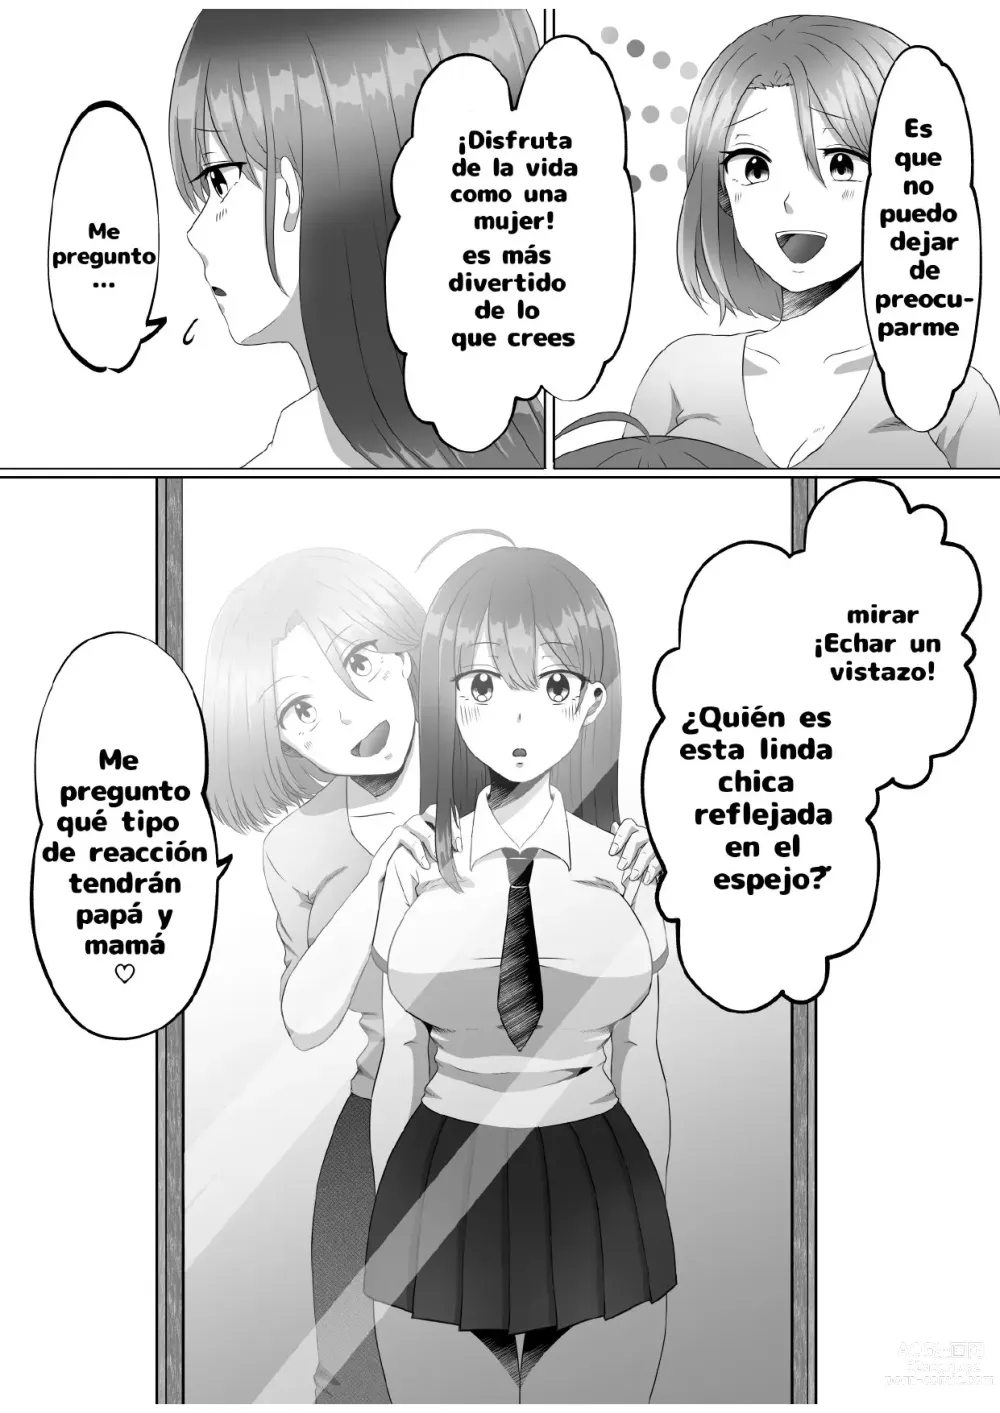 Page 6 of doujinshi ¿Porque me convertí en una mujer?